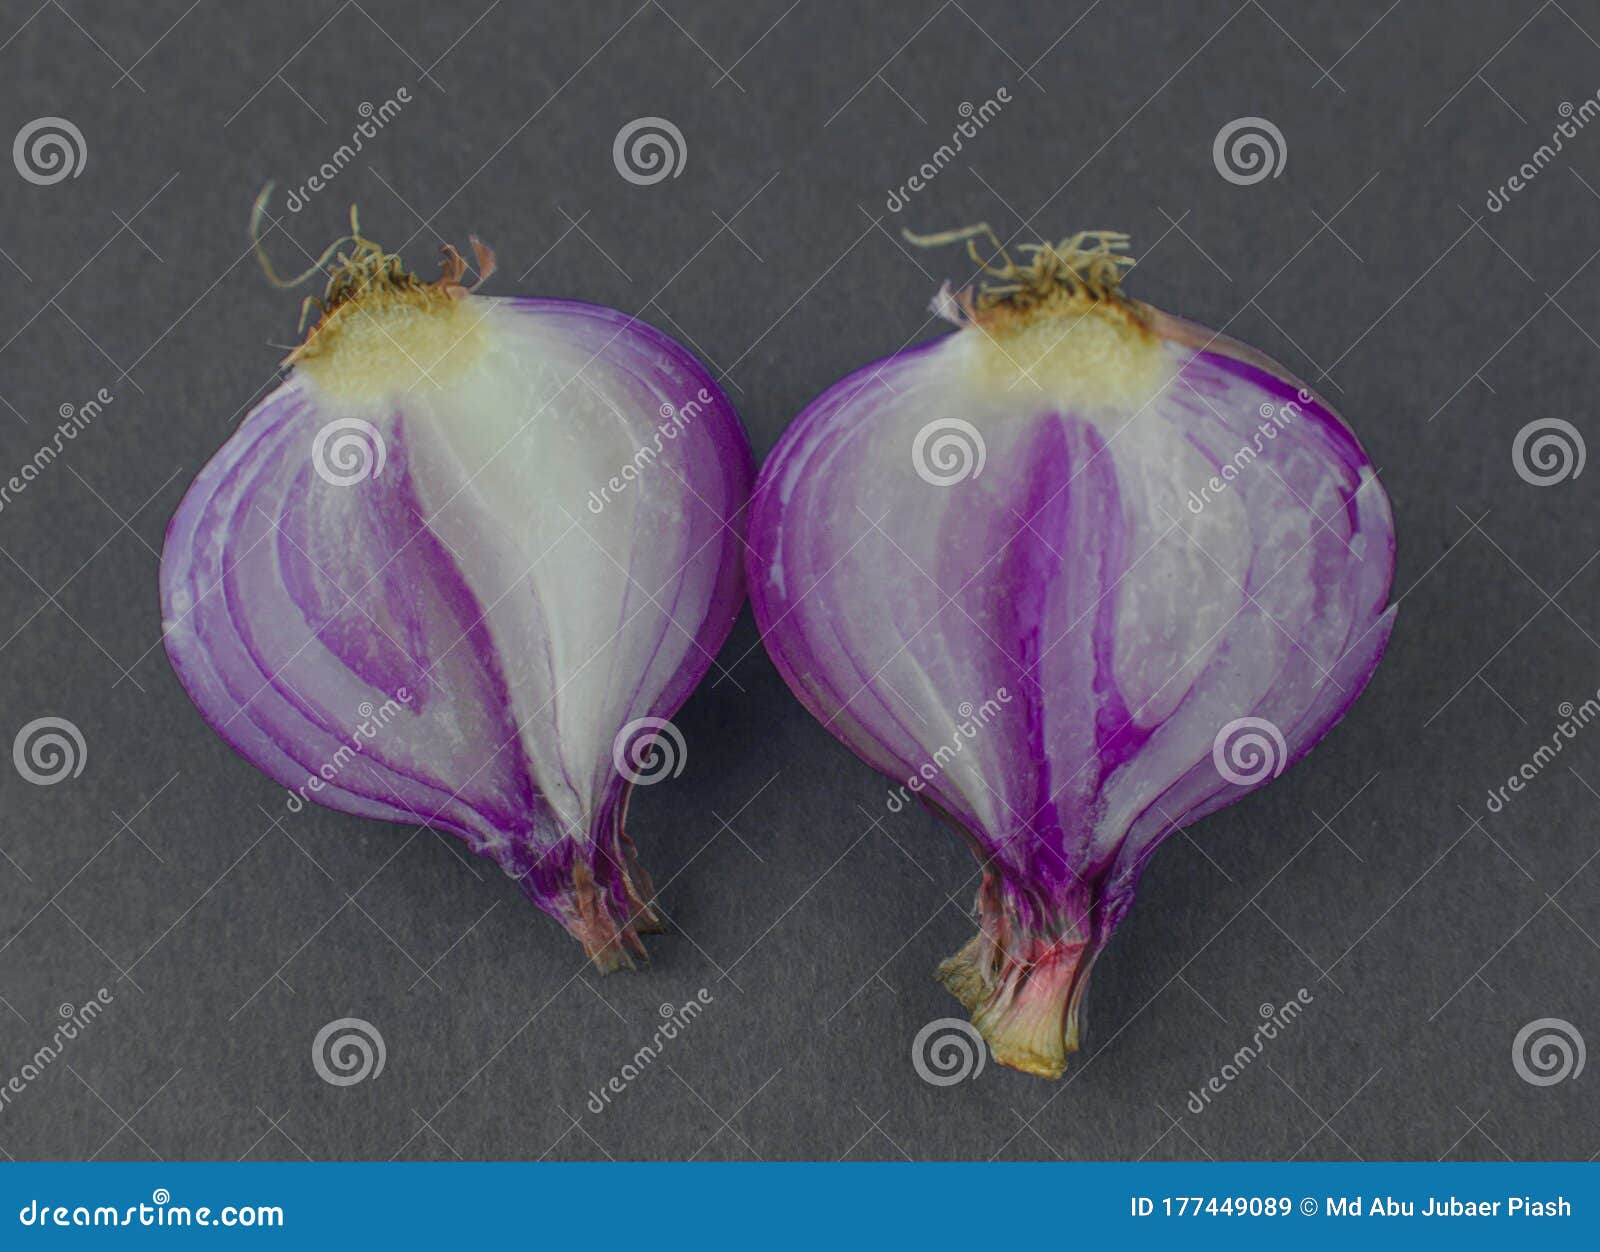 Dark market onion